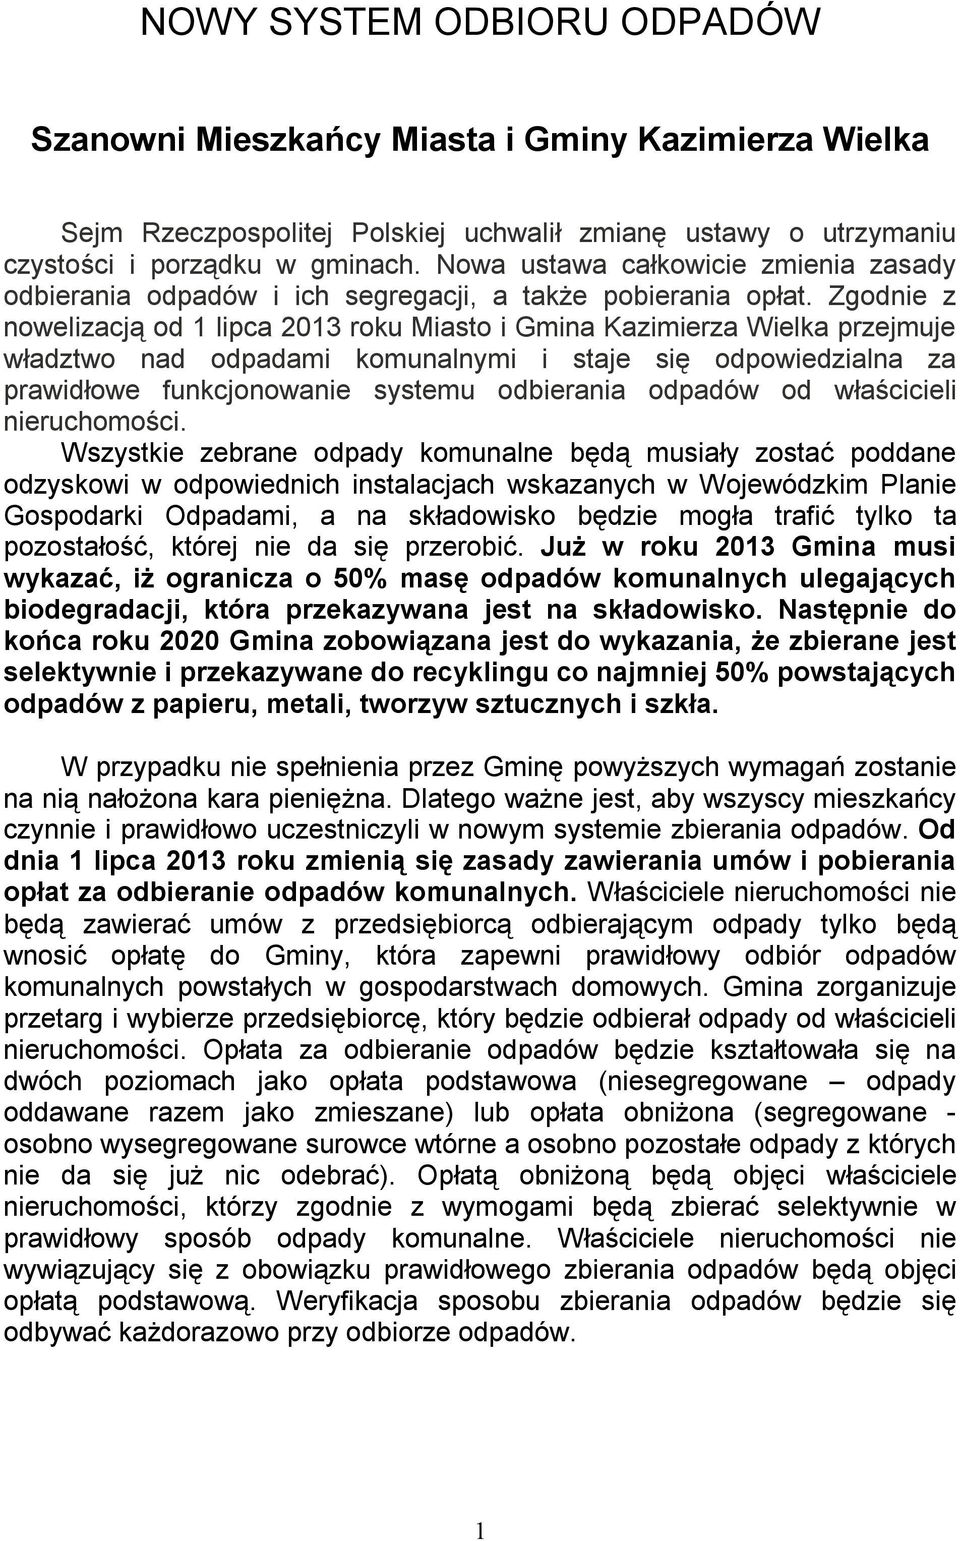 Zgodnie z nowelizacją od 1 lipca 2013 roku Miasto i Gmina Kazimierza Wielka przejmuje władztwo nad odpadami komunalnymi i staje się odpowiedzialna za prawidłowe funkcjonowanie systemu odbierania